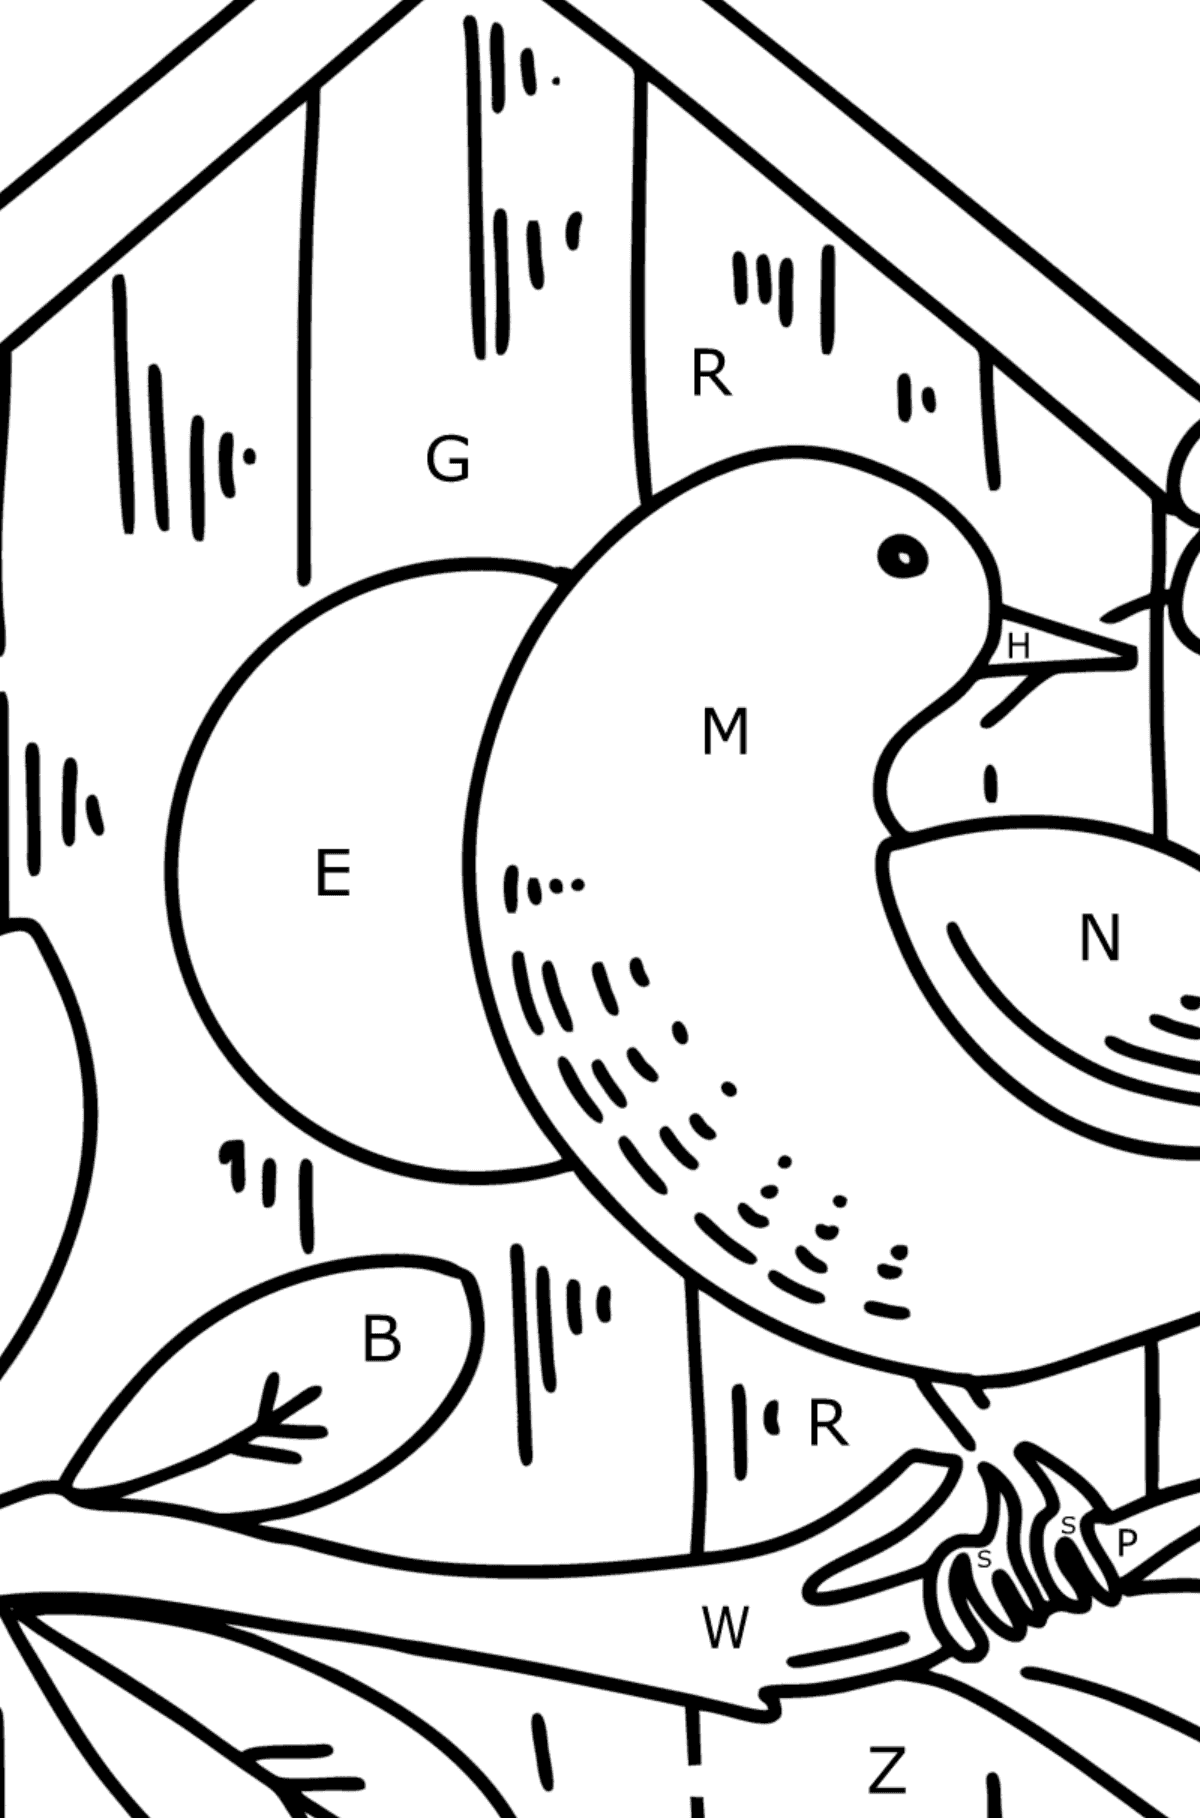 Kleurplaat spreeuwen in het vogelhuisje - Kleuren met letters voor kinderen